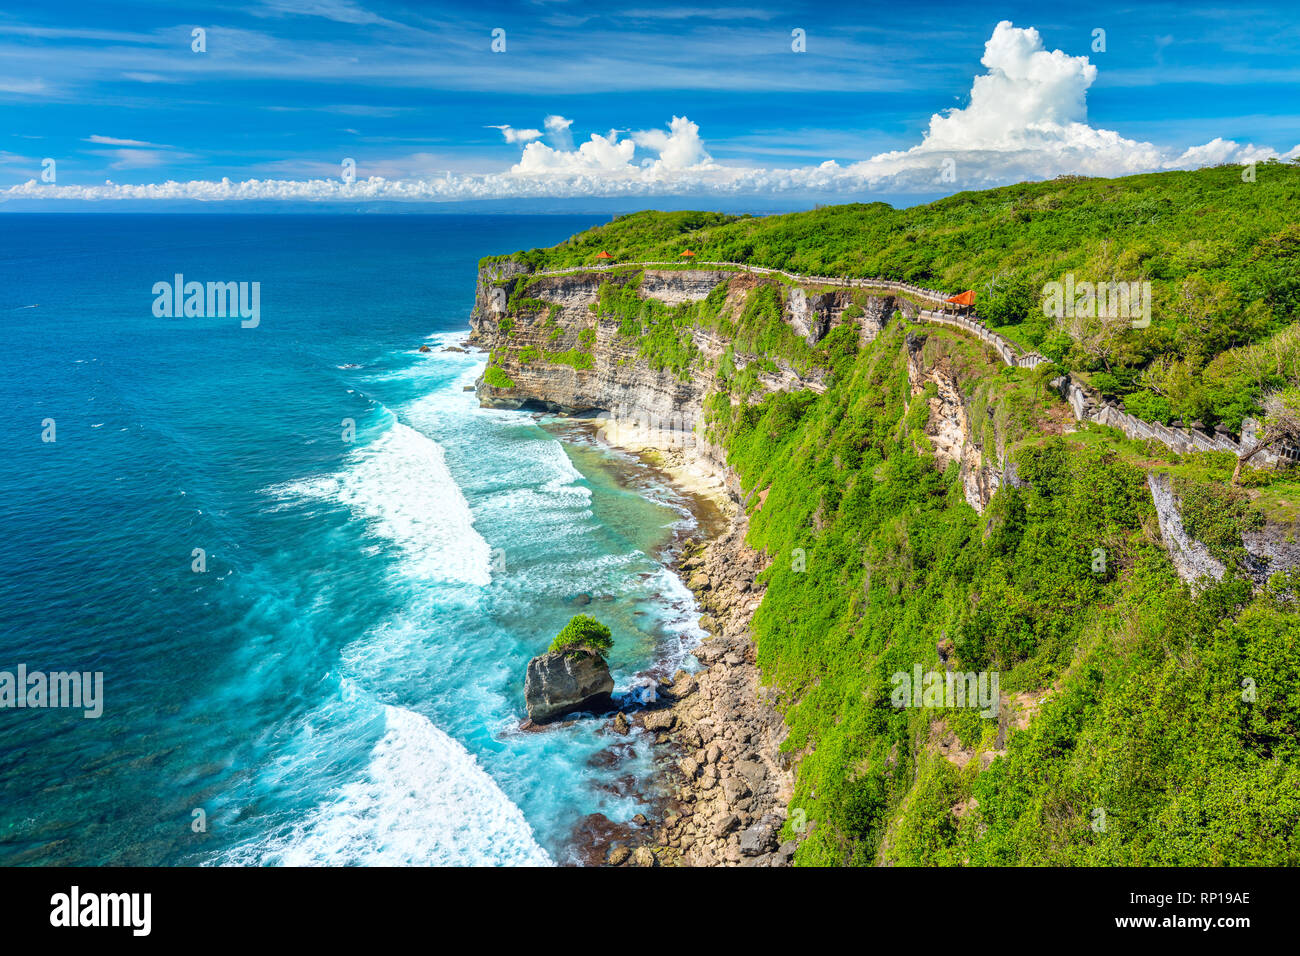 Paesaggio di Oceano e rocce, colorato e bellissimo luogo, Bali, Indonesia, di grandi dimensioni Foto Stock